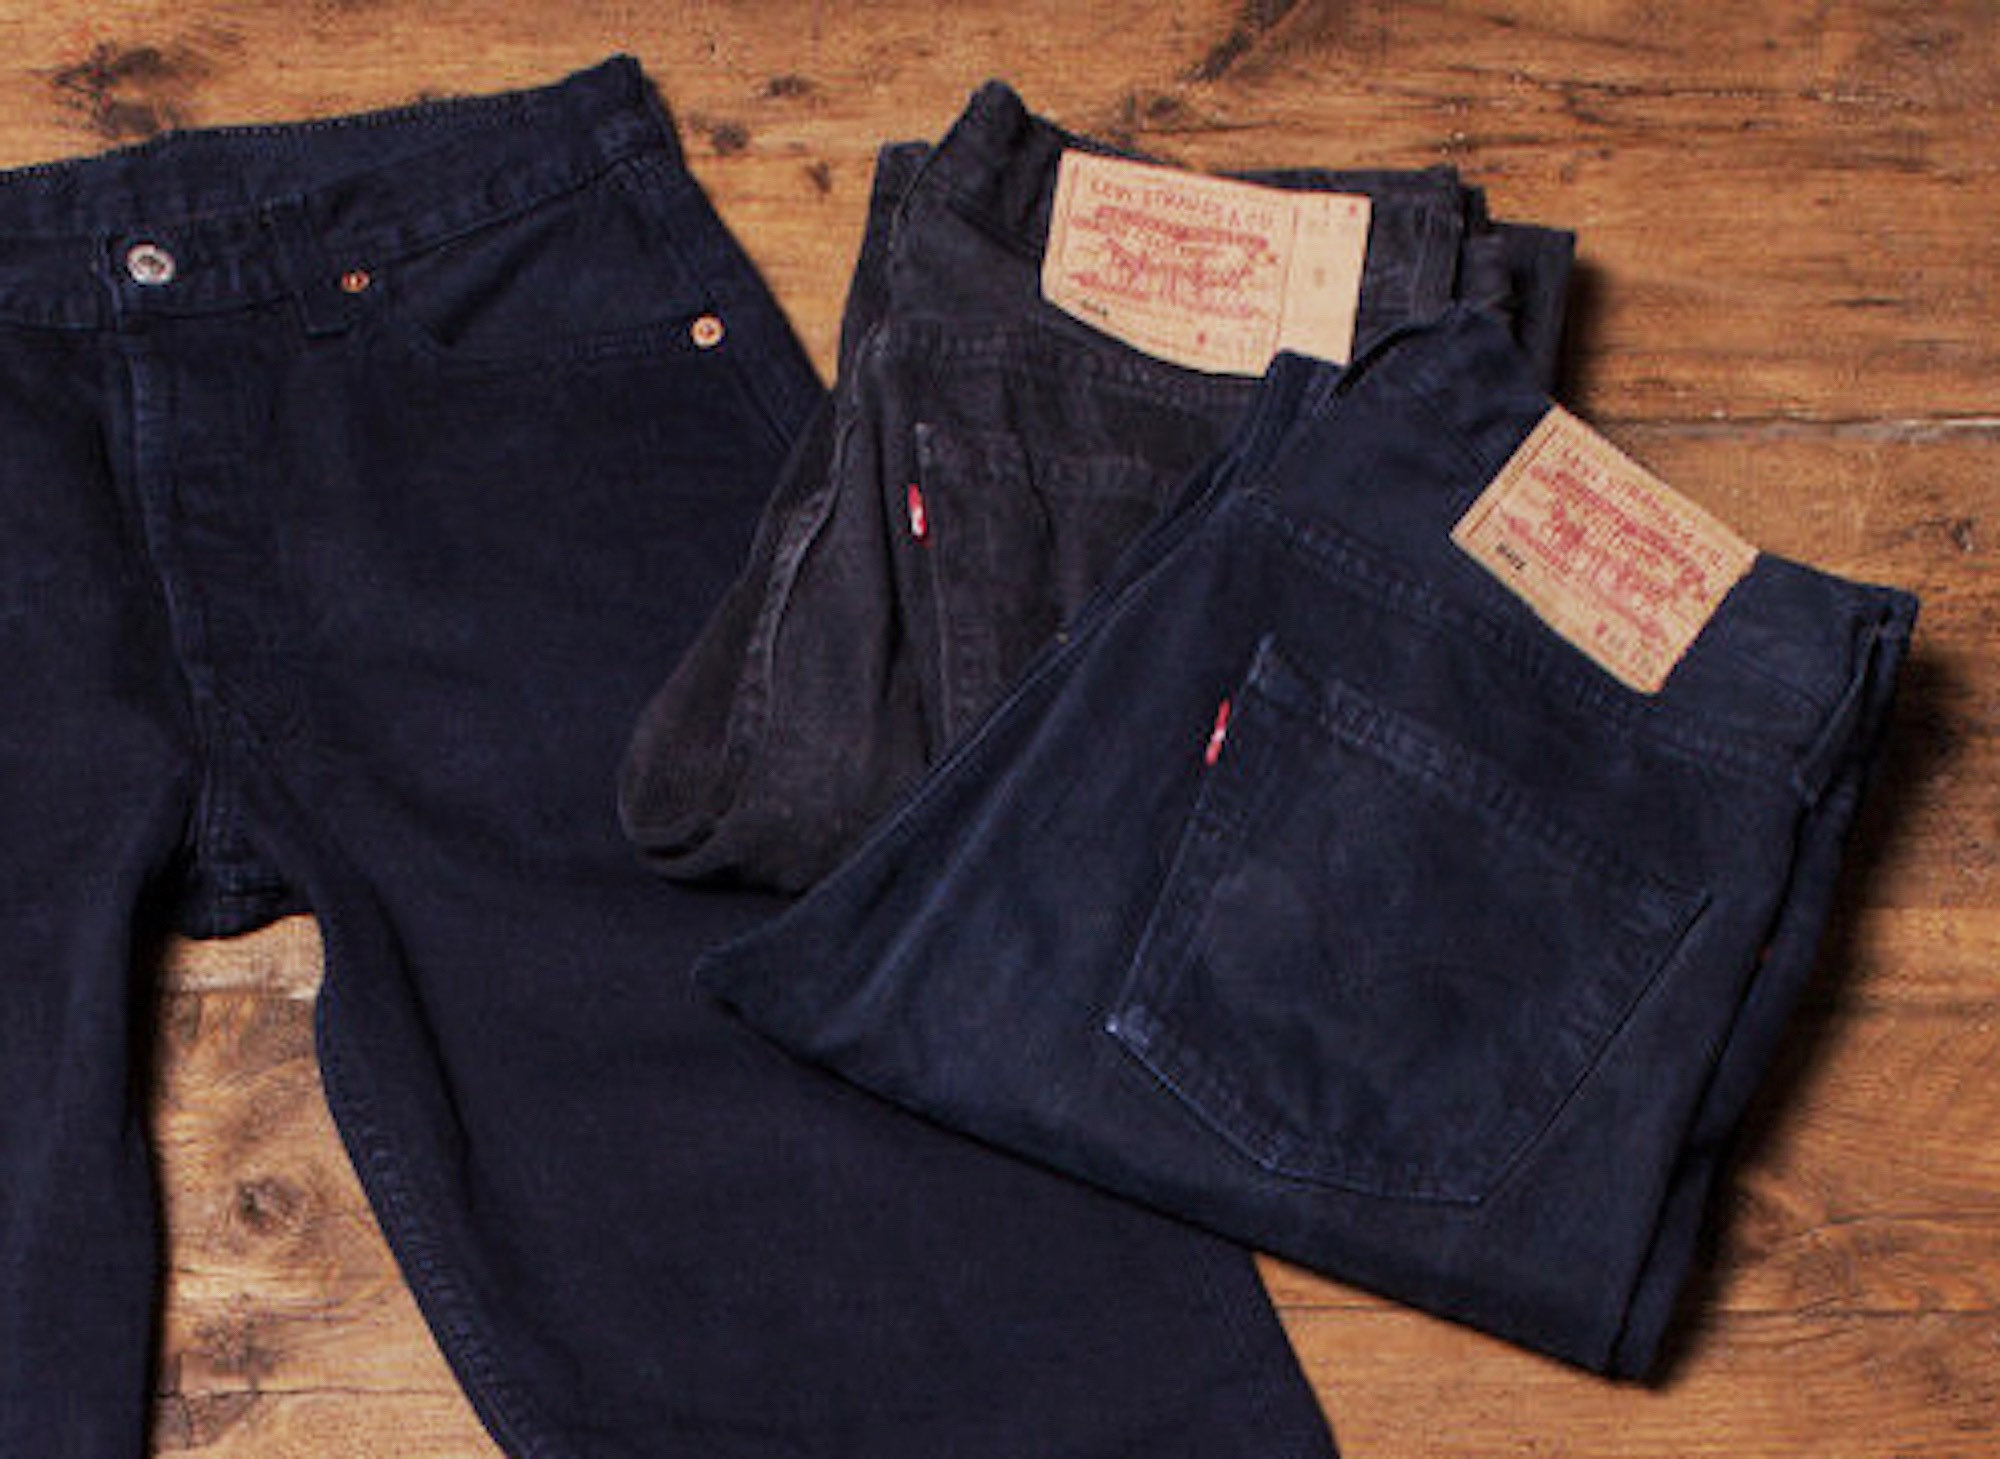 Levi 501s ALL Colours Sizes Vintage Jeans - Etsy